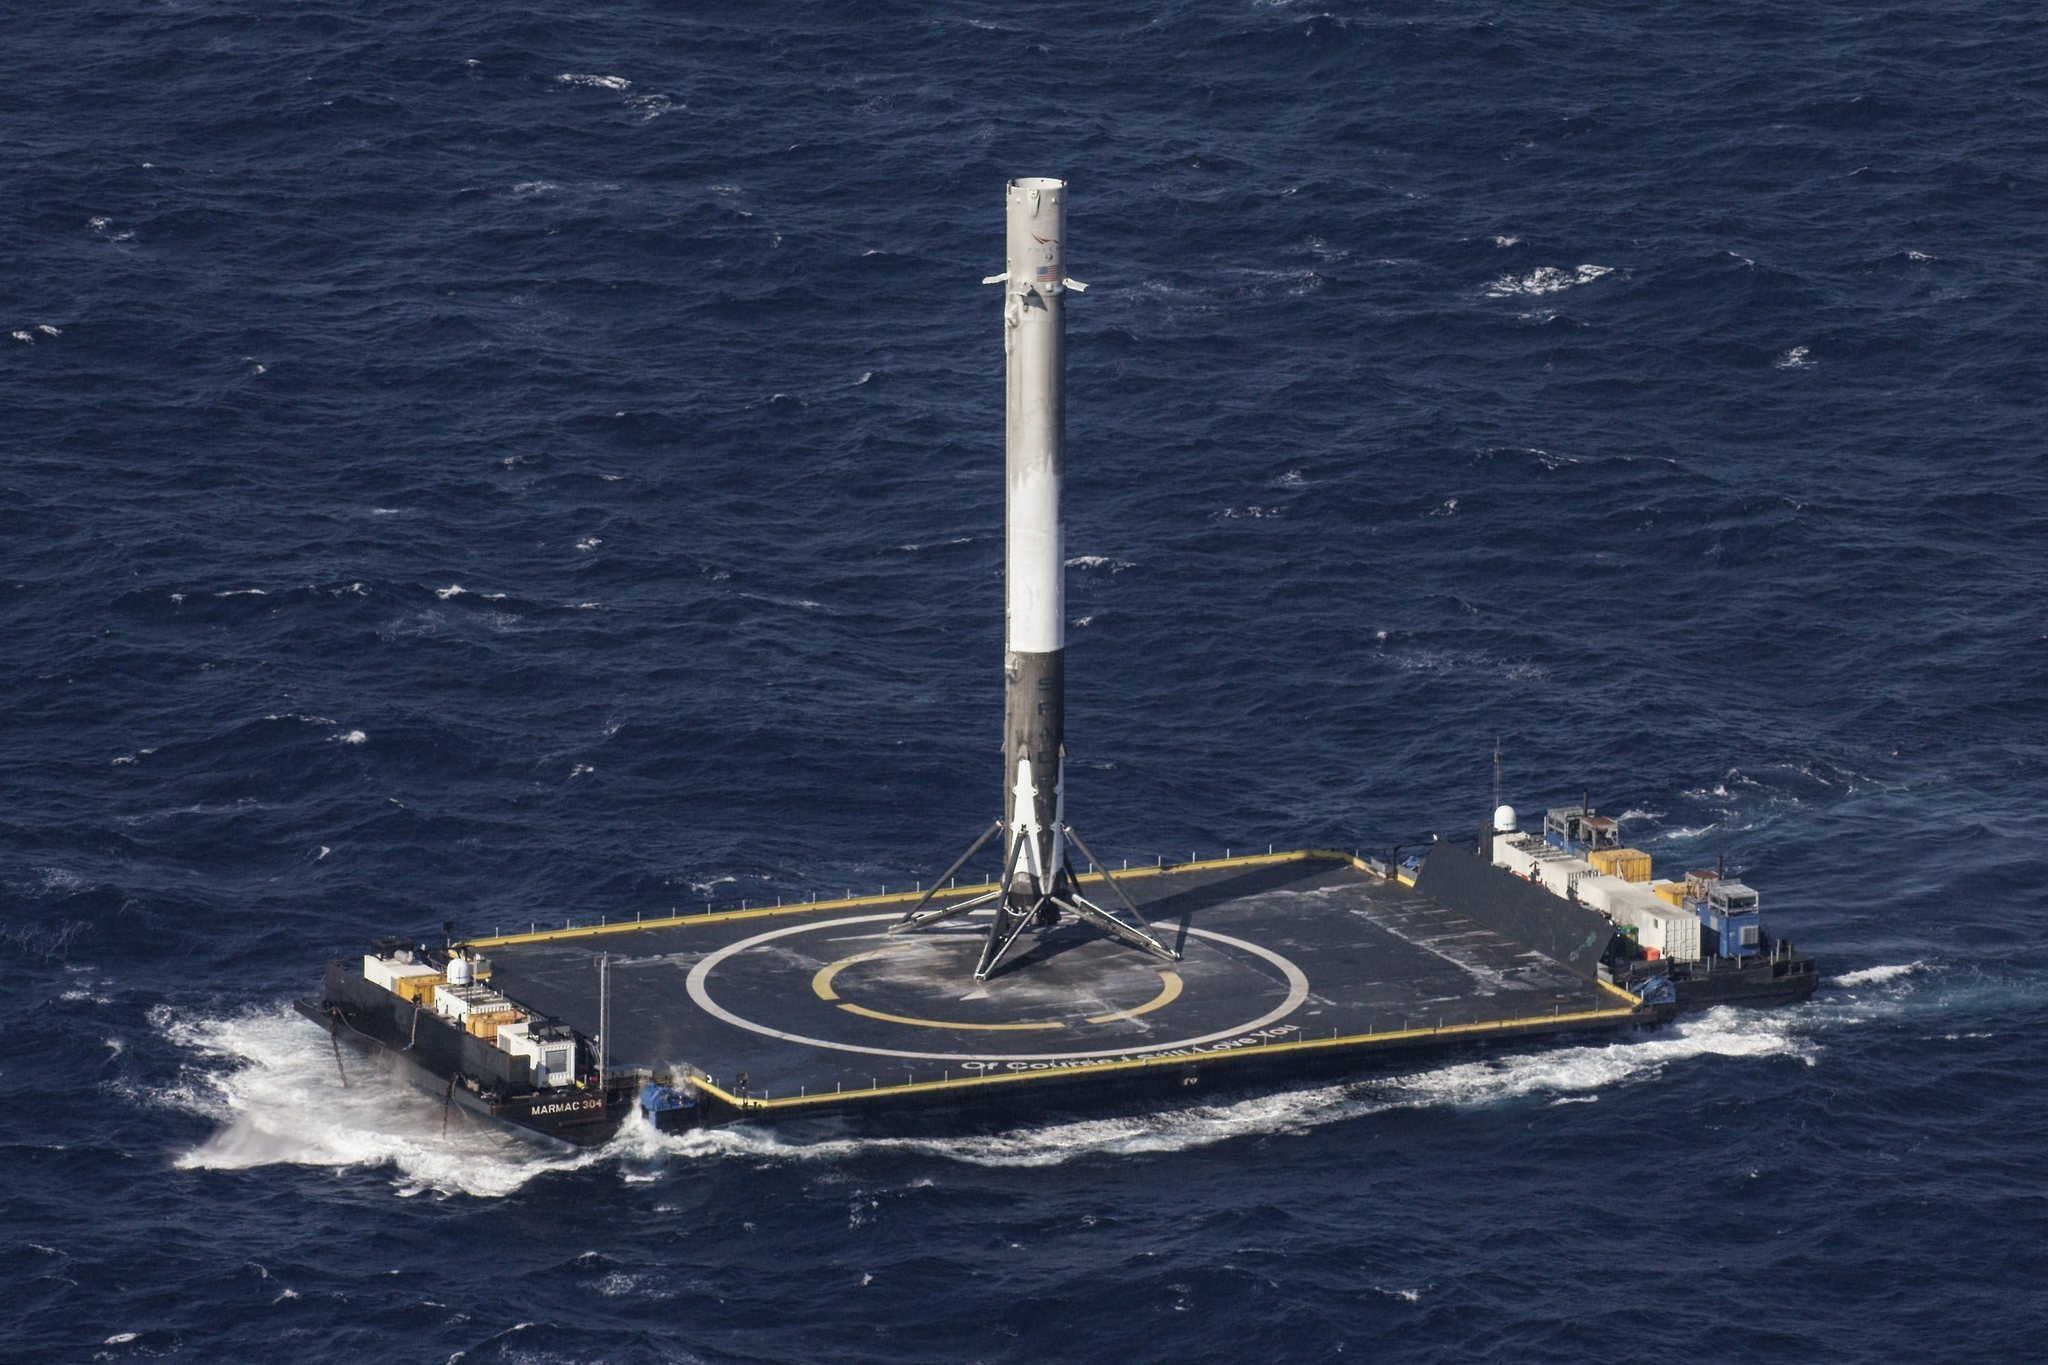 Zdjęcie wykonane tuż po pierwszym lądowaniu rakiety Falcon 9 w ramach misji CRS-8.